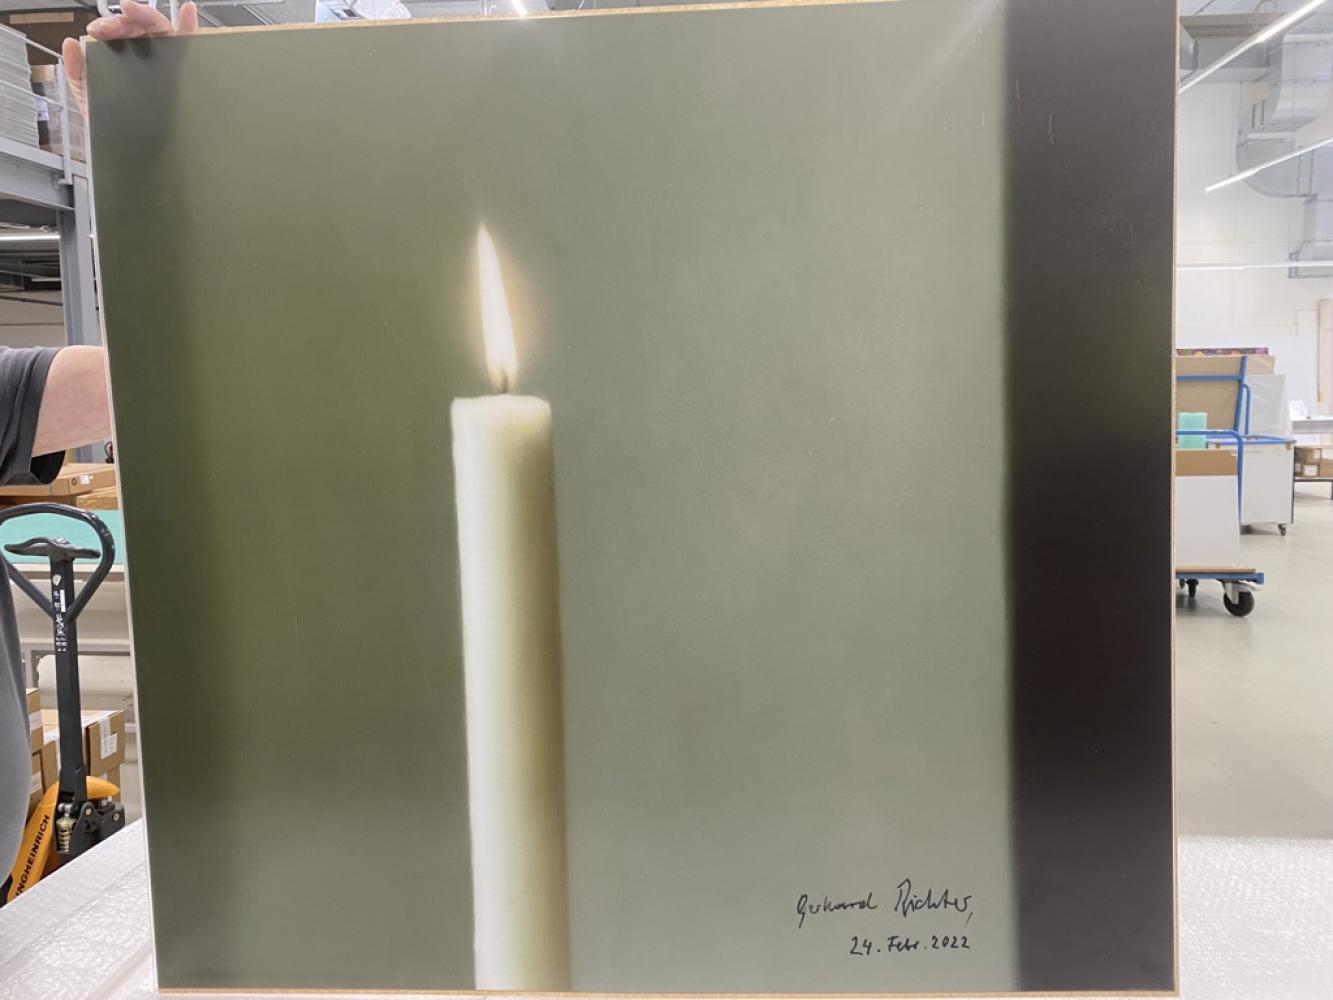 Versteigert werden unter anderem handsignierte Drucke von Gerhard Richters "Die Kerze"